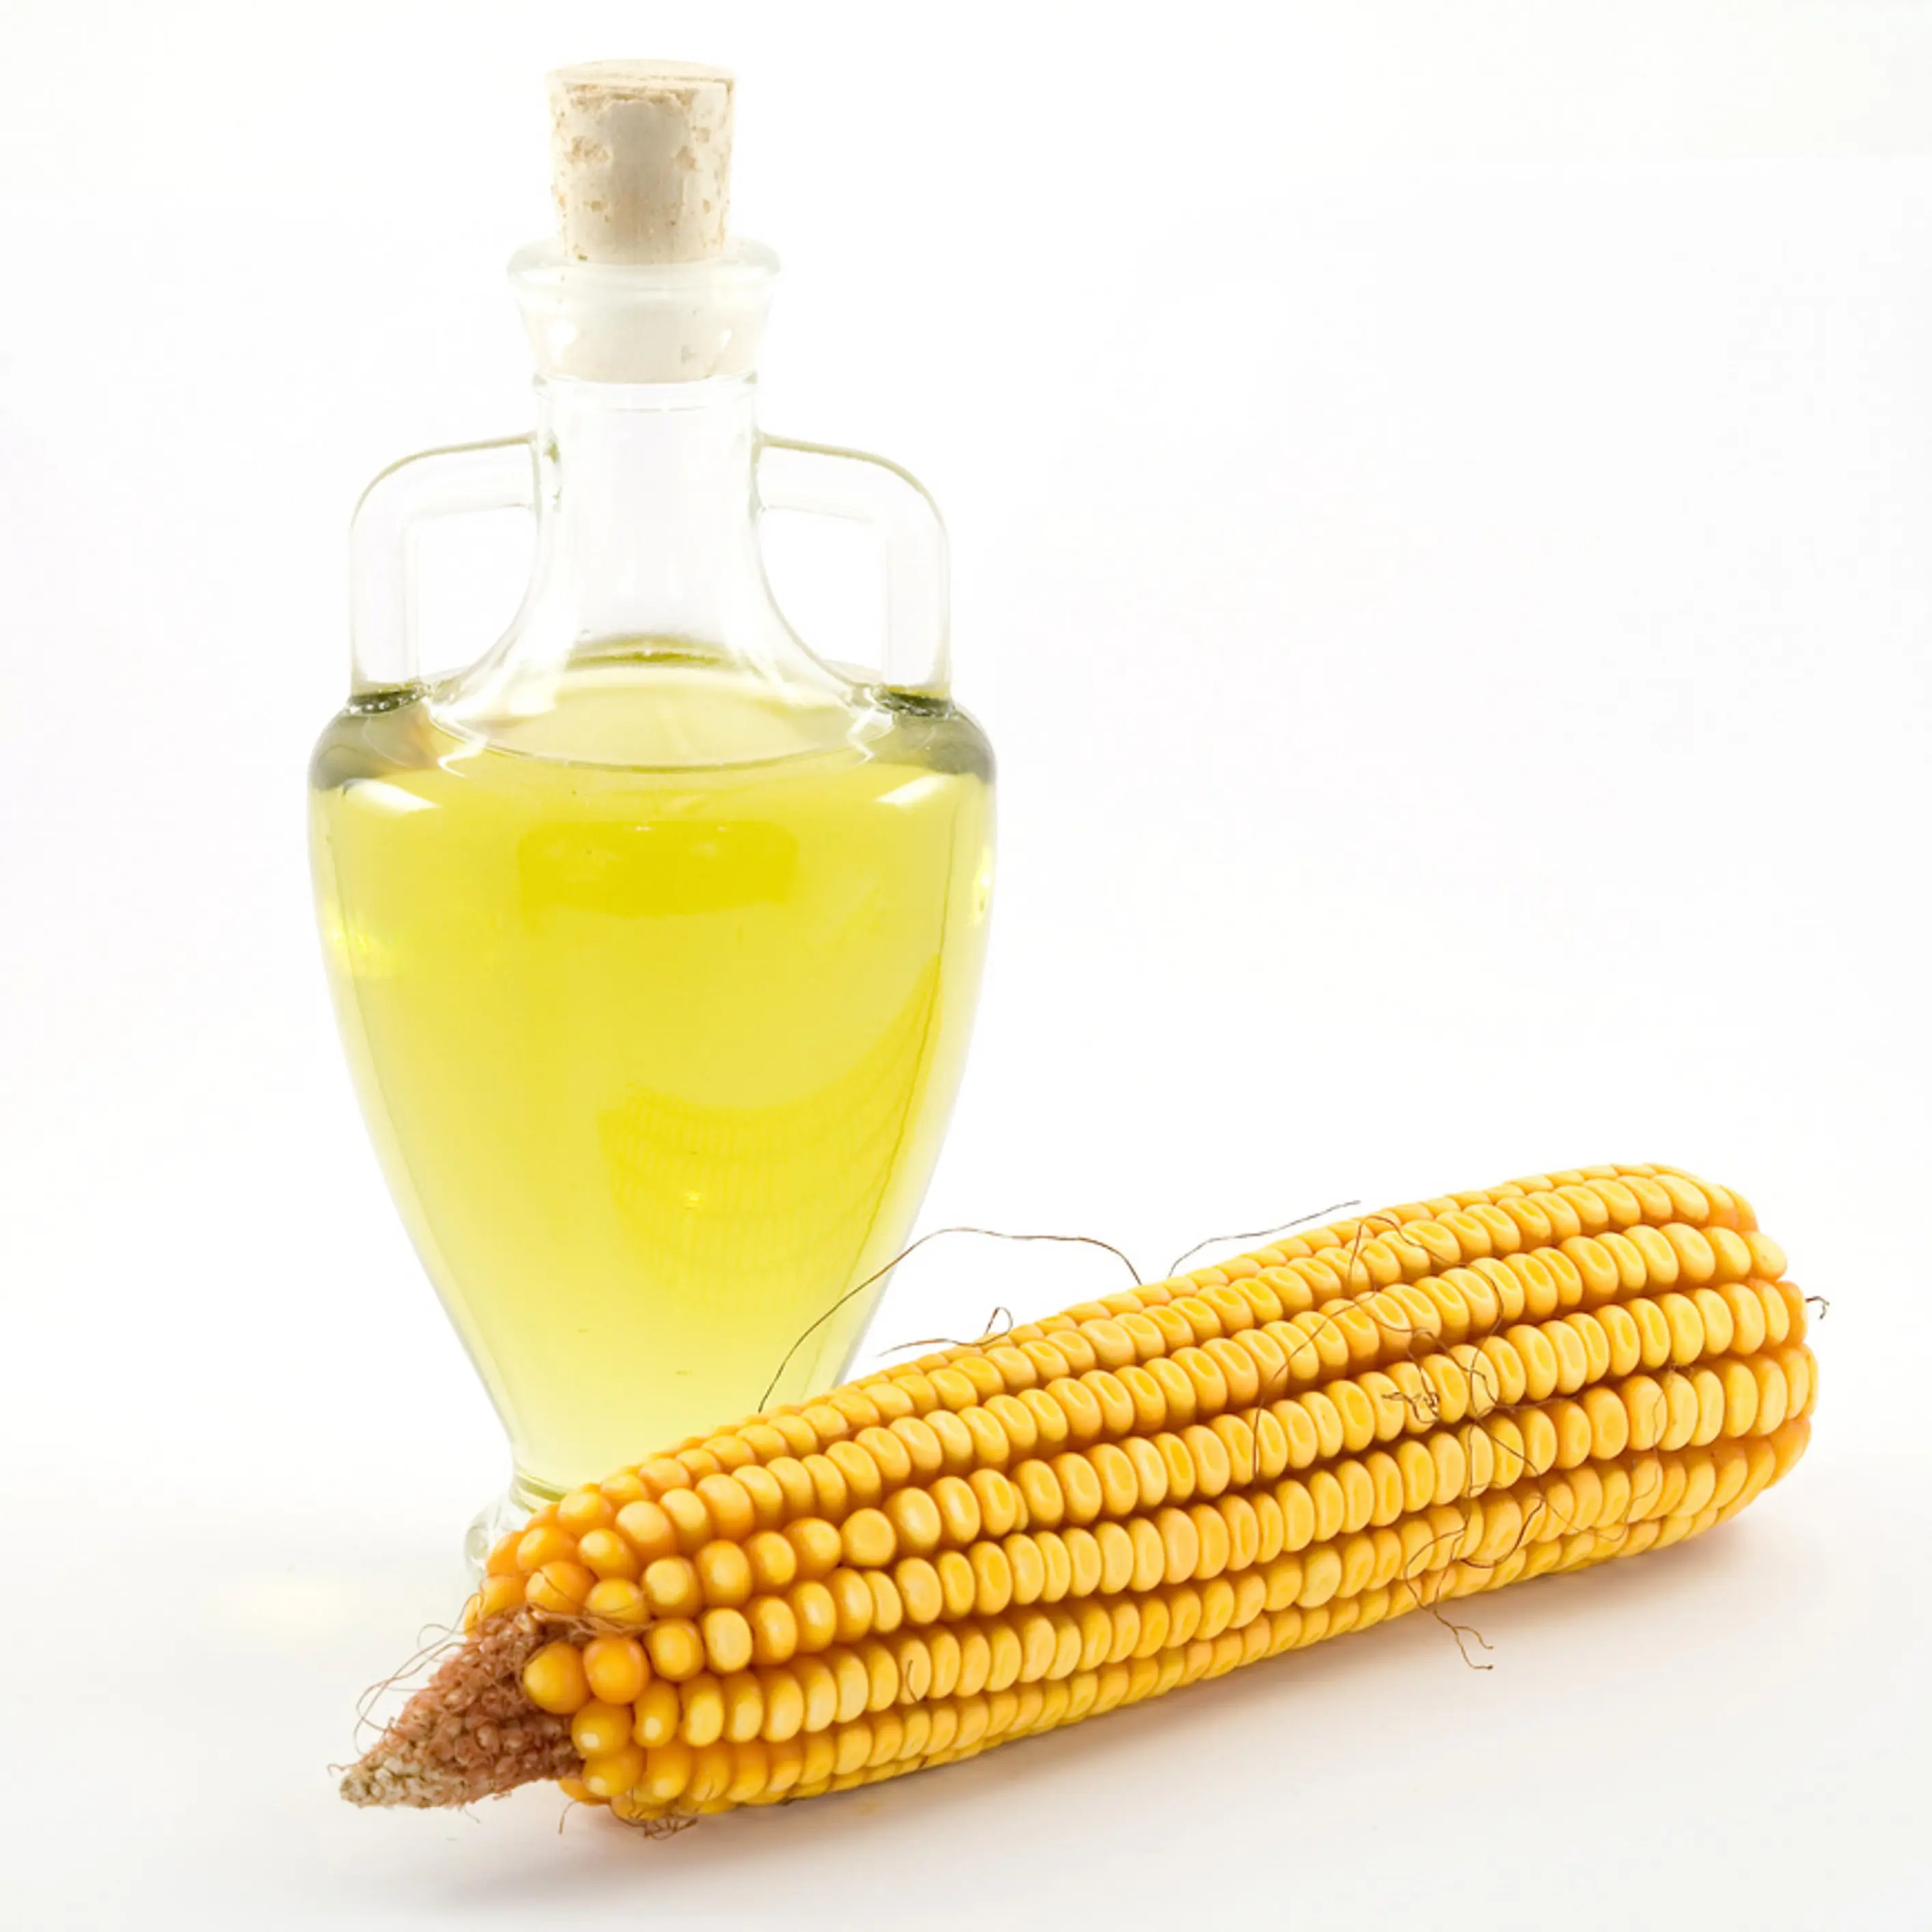 Aceite de maíz refinado de alta calidad para cocinar Aceite de maíz refinado al por mayor 1L,2L, 3L, 5L, 20 L, bidones y tanques Flexi